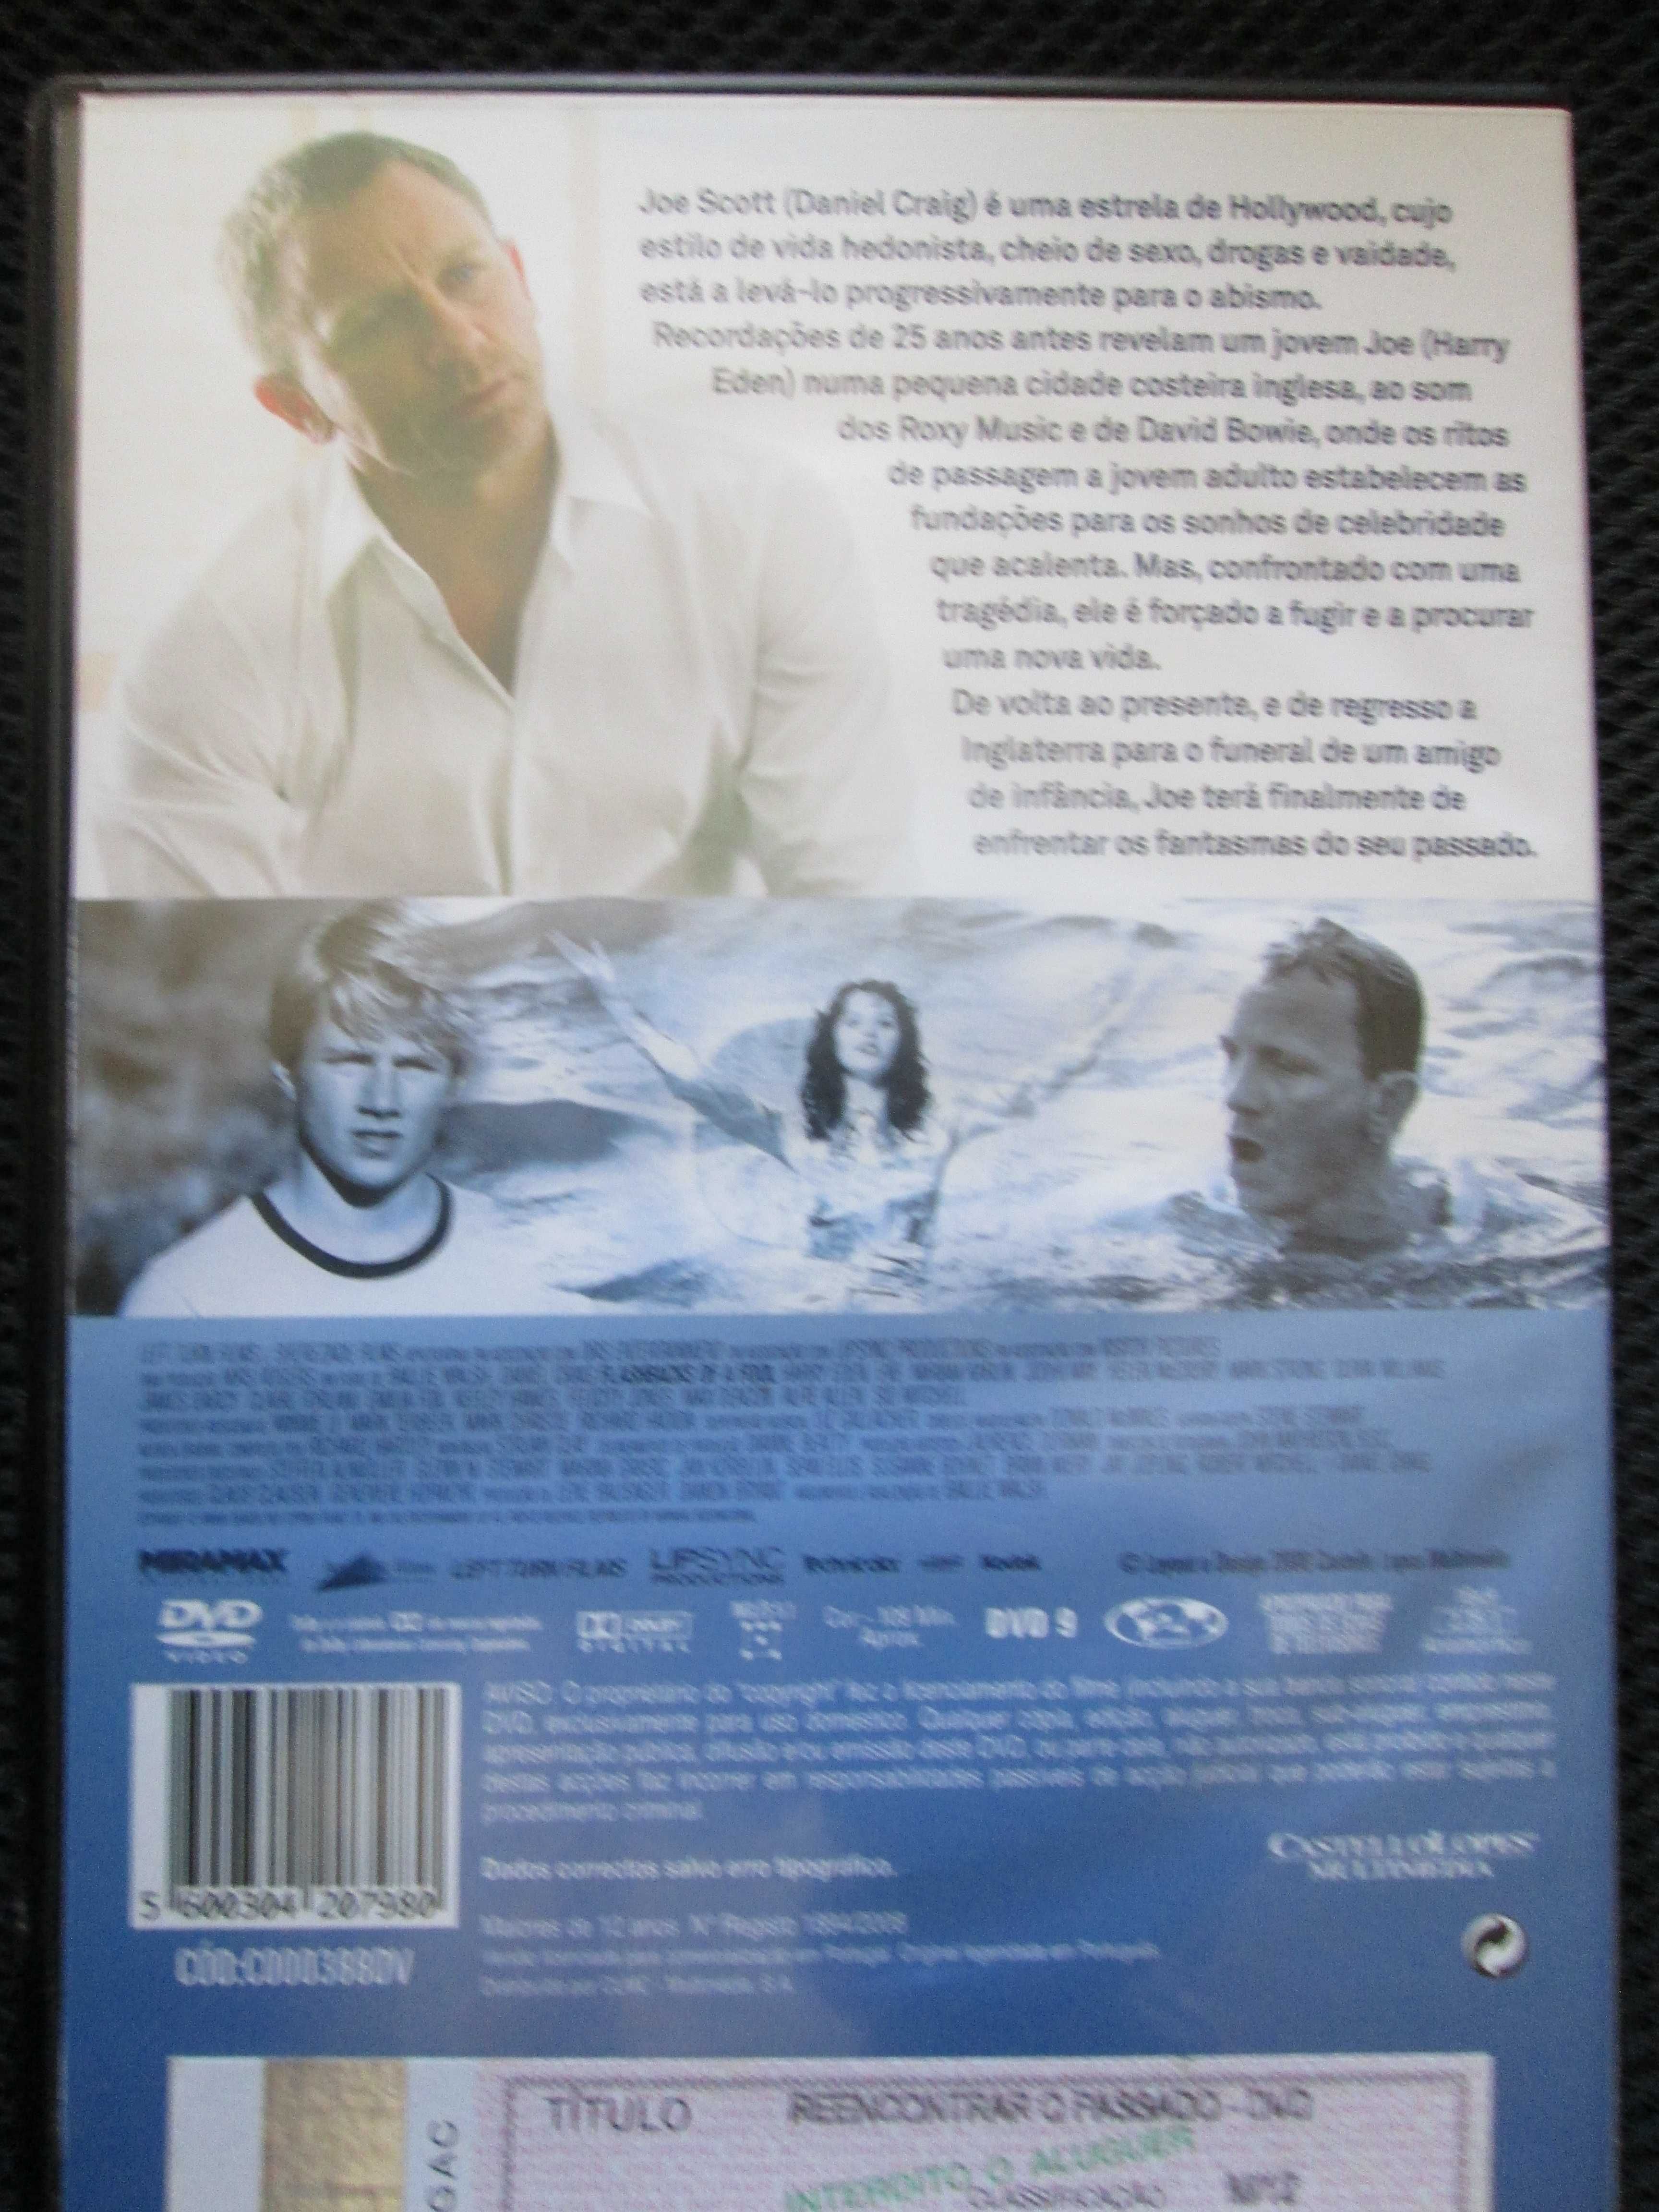 DVD Reencontrar o Passado, Daniel Craig, Harry Eden, Felicity Jones